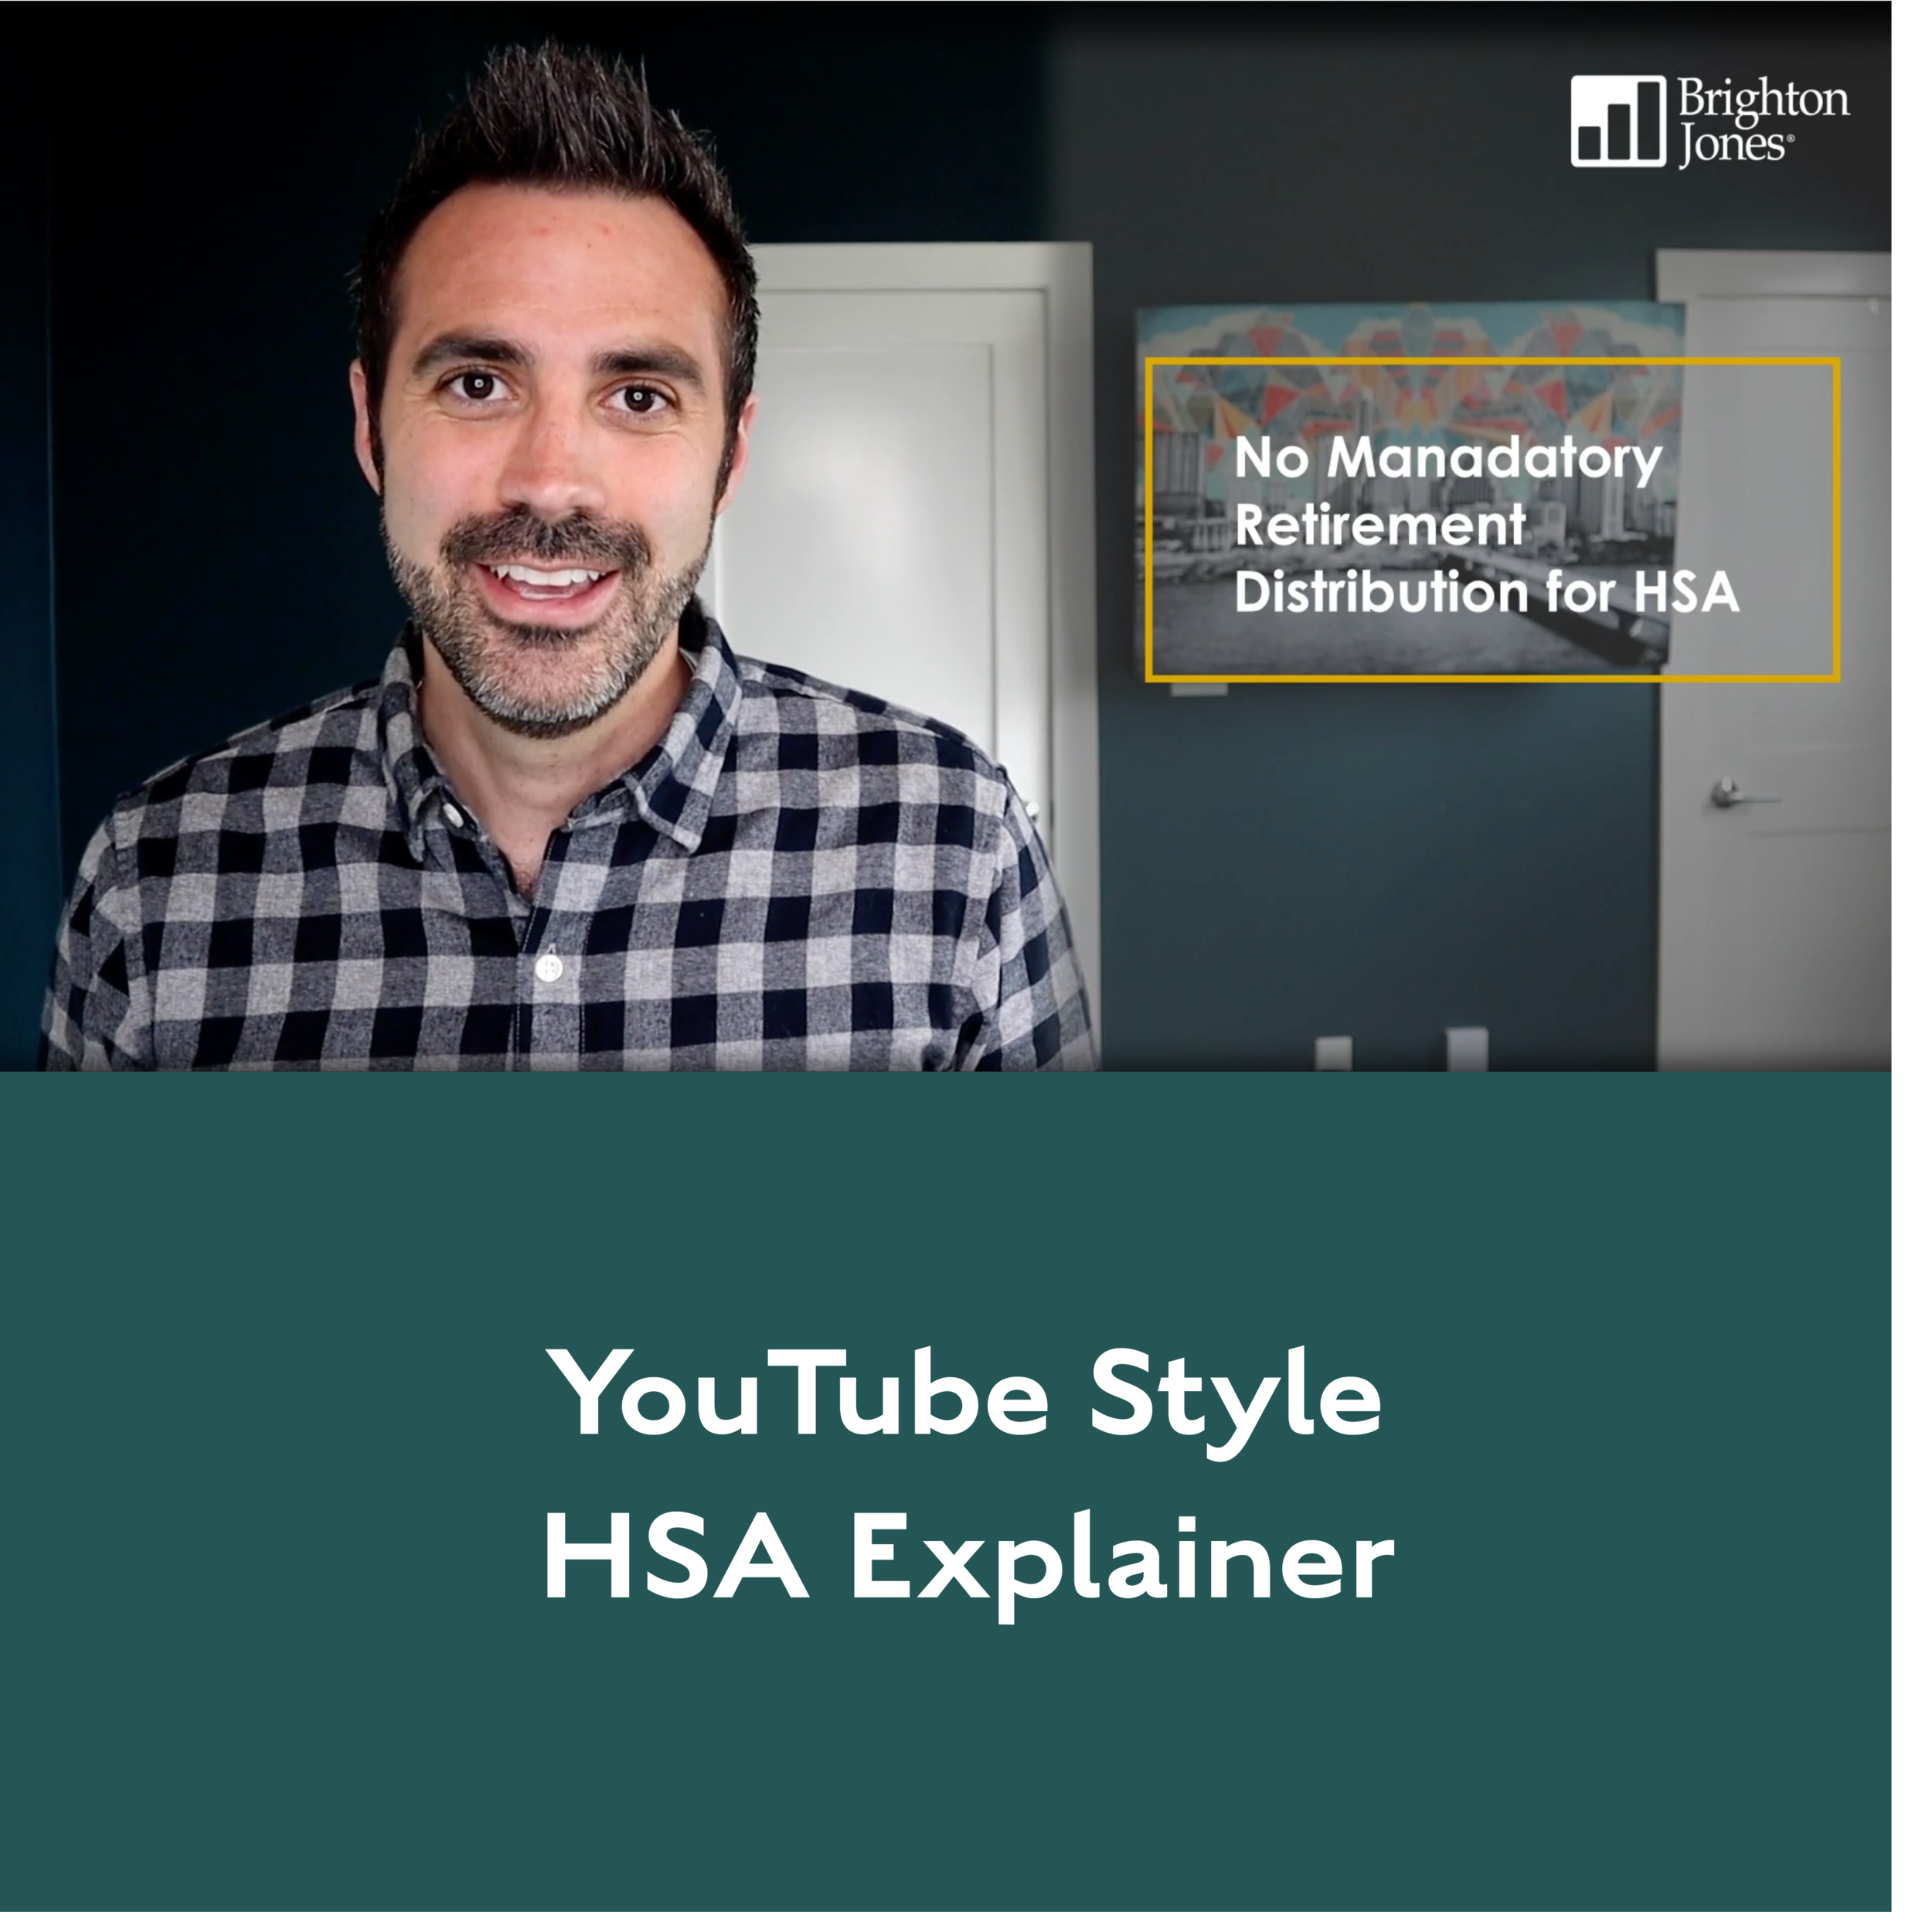 YouTube Style HSA Explainer